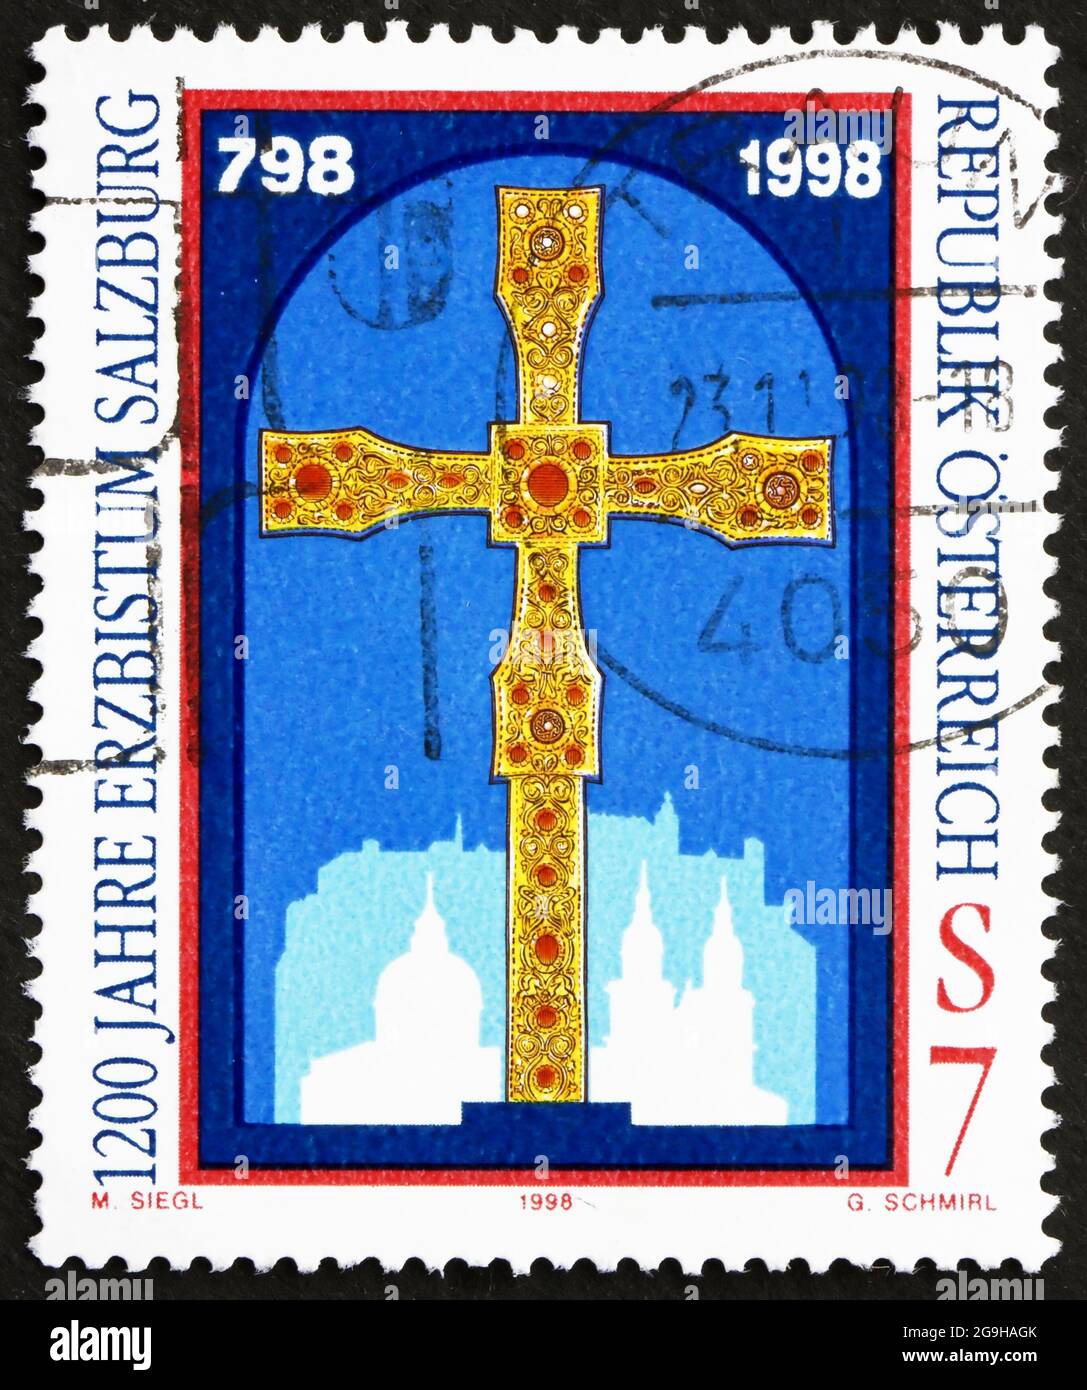 ÖSTERREICH - UM 1998: Eine in Österreich gedruckte Briefmarke zeigt das Goldene Kreuz, 1200 Jahre Erzdiözese Salzburg, um 1998 Stockfoto